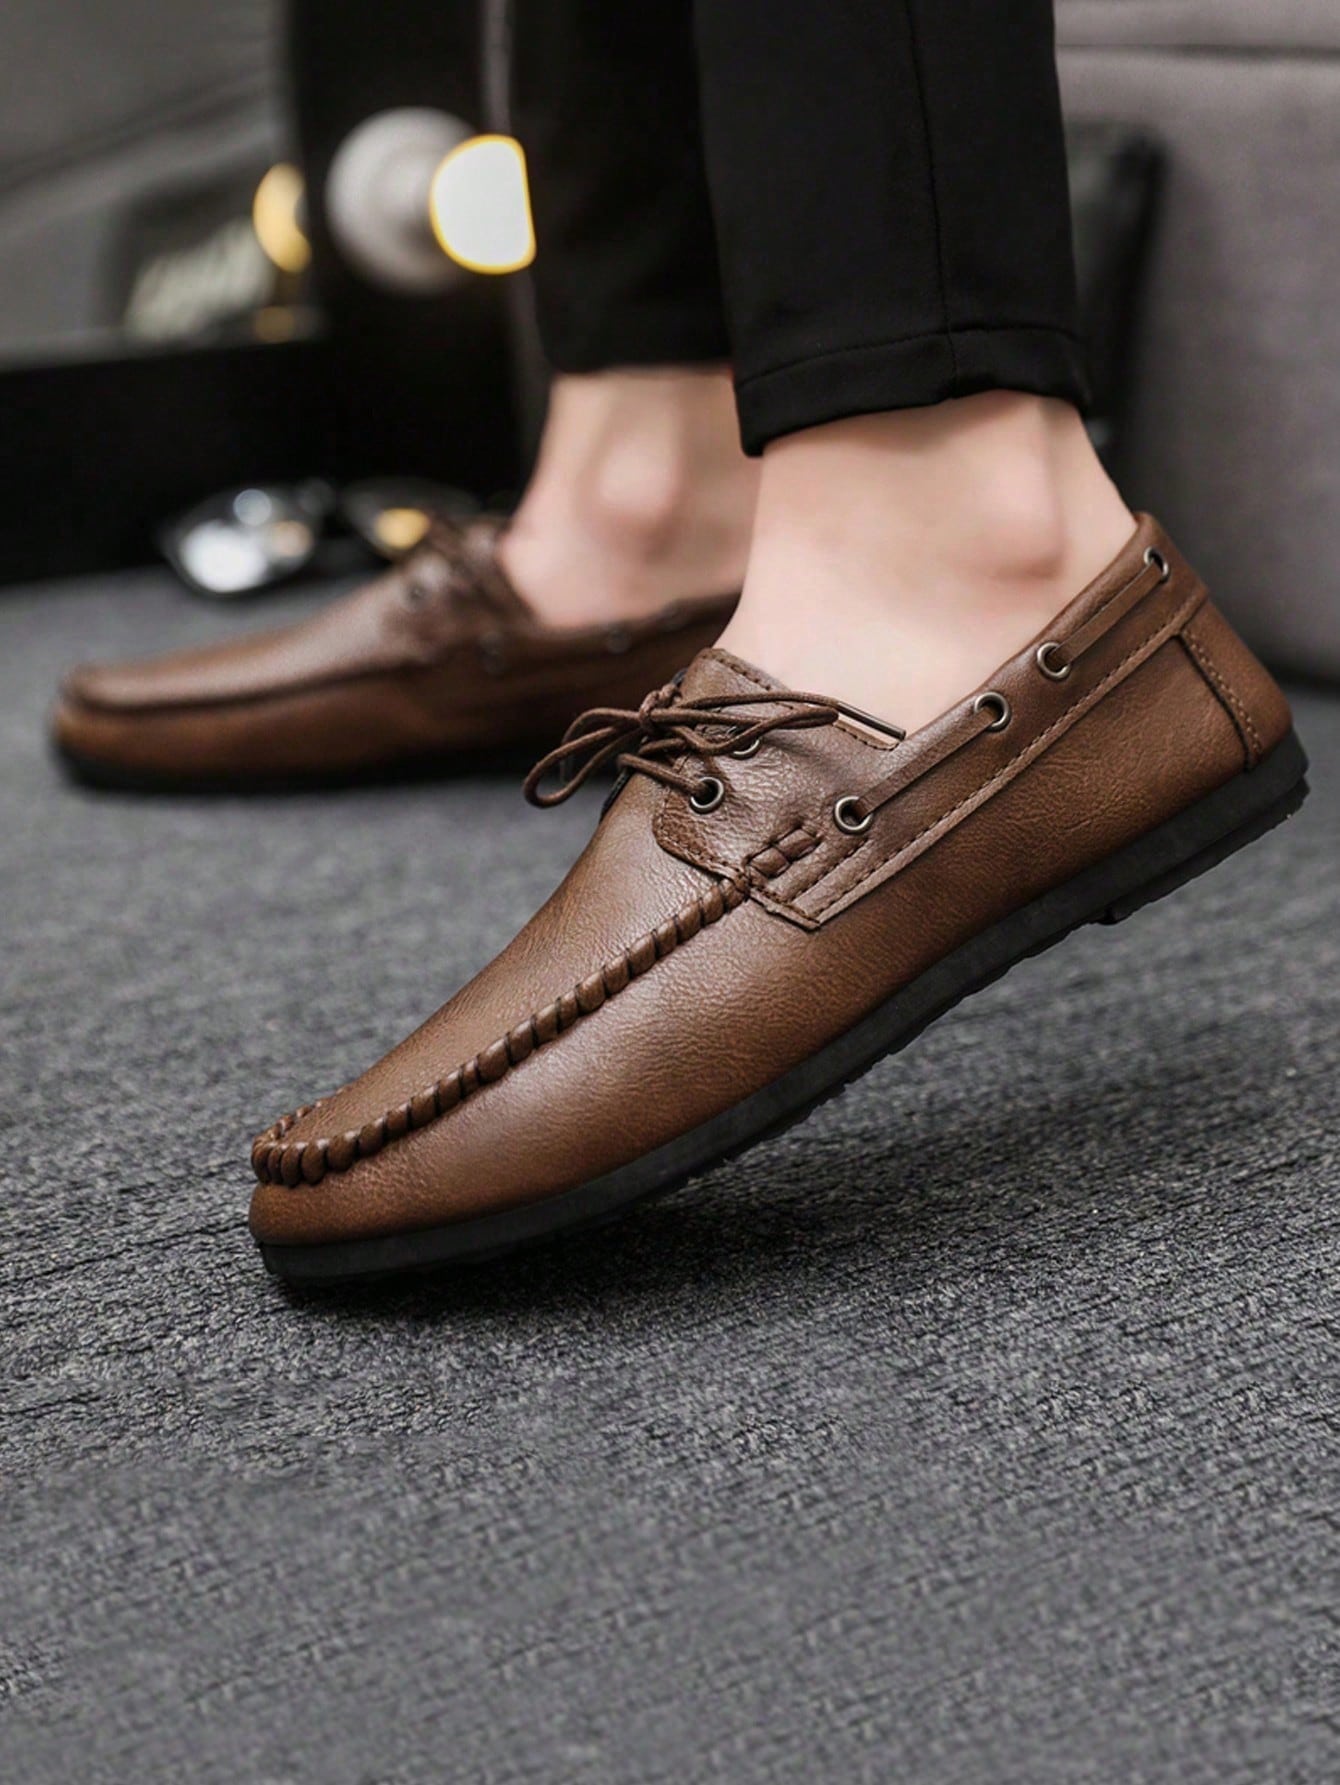 Официальные повседневные кожаные туфли в британском стиле на шнуровке для мужчин, коричневый мужские легкие кожаные туфли коричневые дизайнерские повседневные туфли удобные дышащие лоферы лето 2021